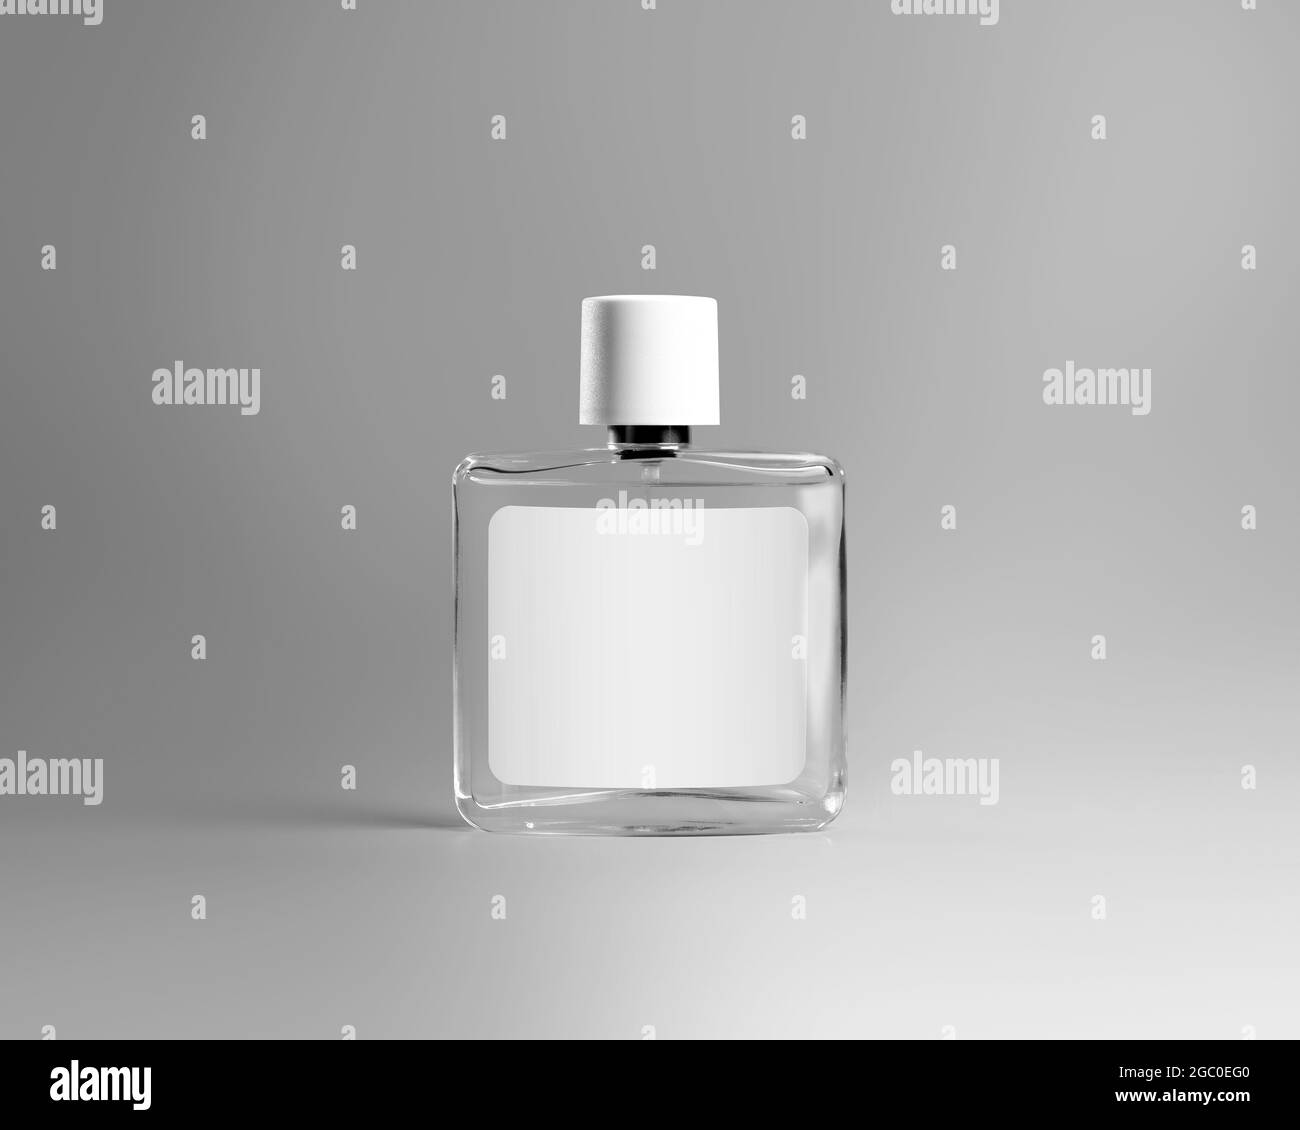 Maquette d'une bouteille en verre transparent pour parfum, liquide aromatisé, essence, avec bouchon texturé en plastique, étiquette pour le design, marque. Modèle de flacon, parfumé Banque D'Images